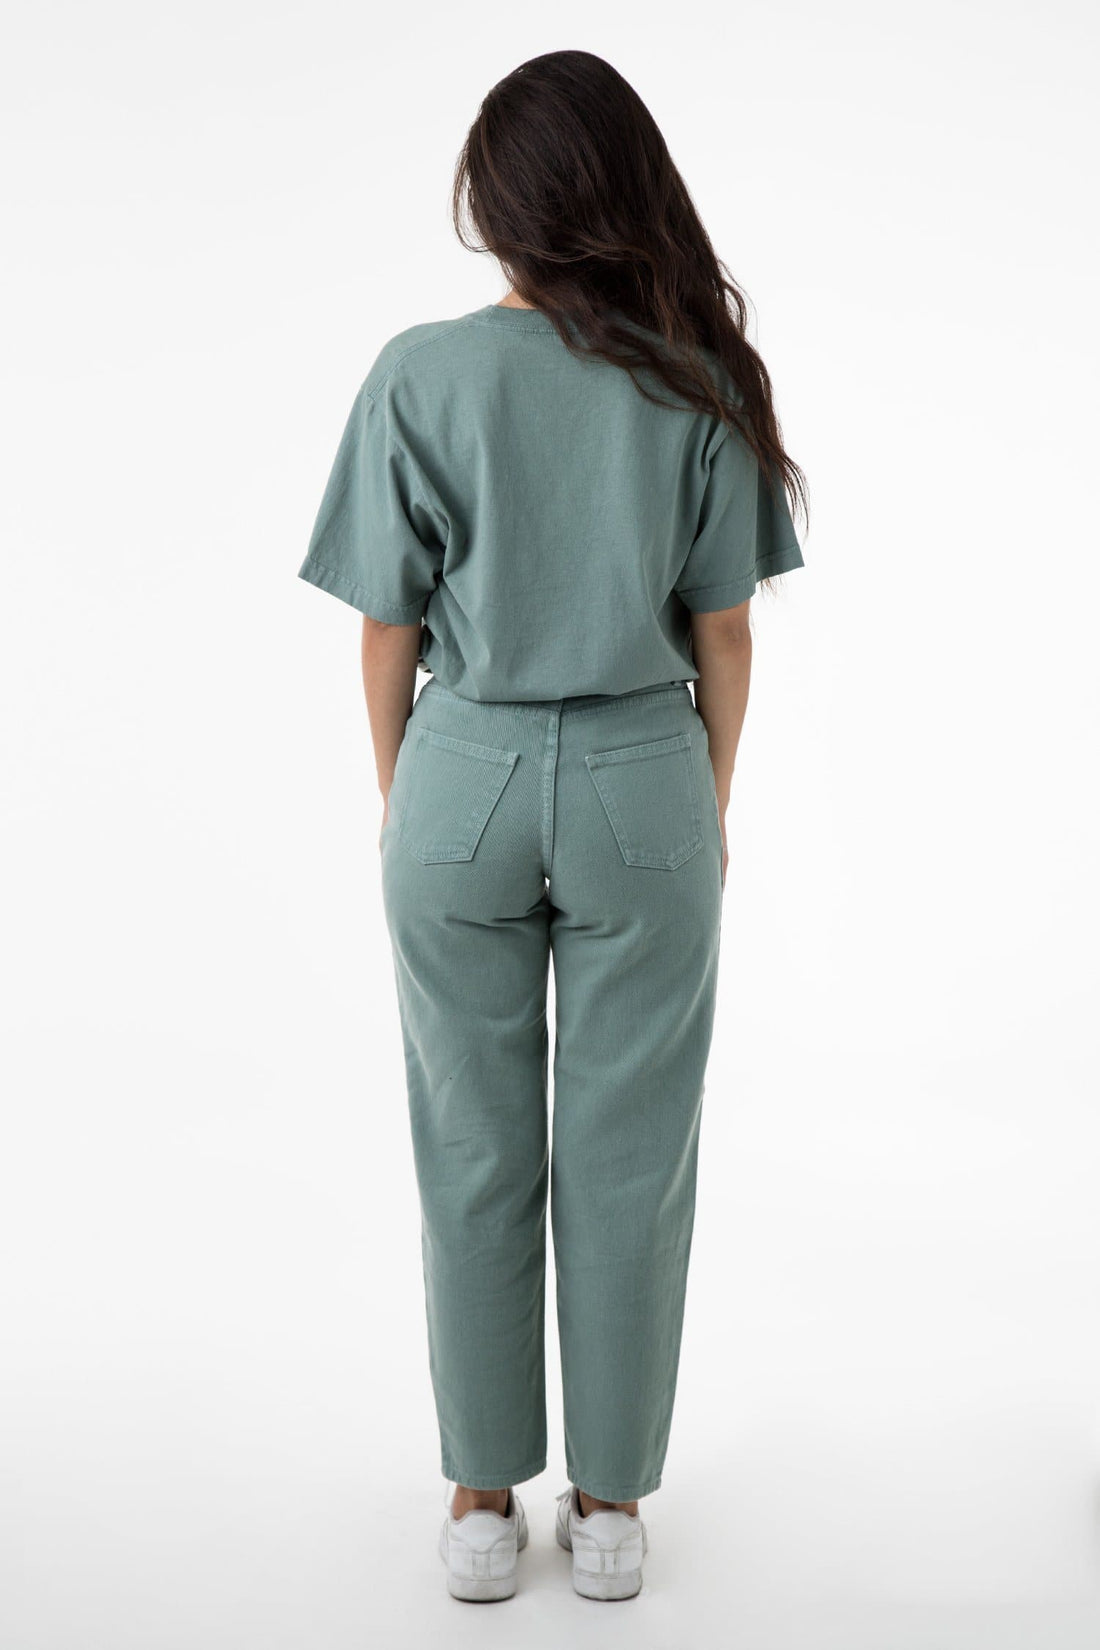 RBDW01GD - Garment Dye Women's Relaxed Fit Bull Denim Jean – Los ...